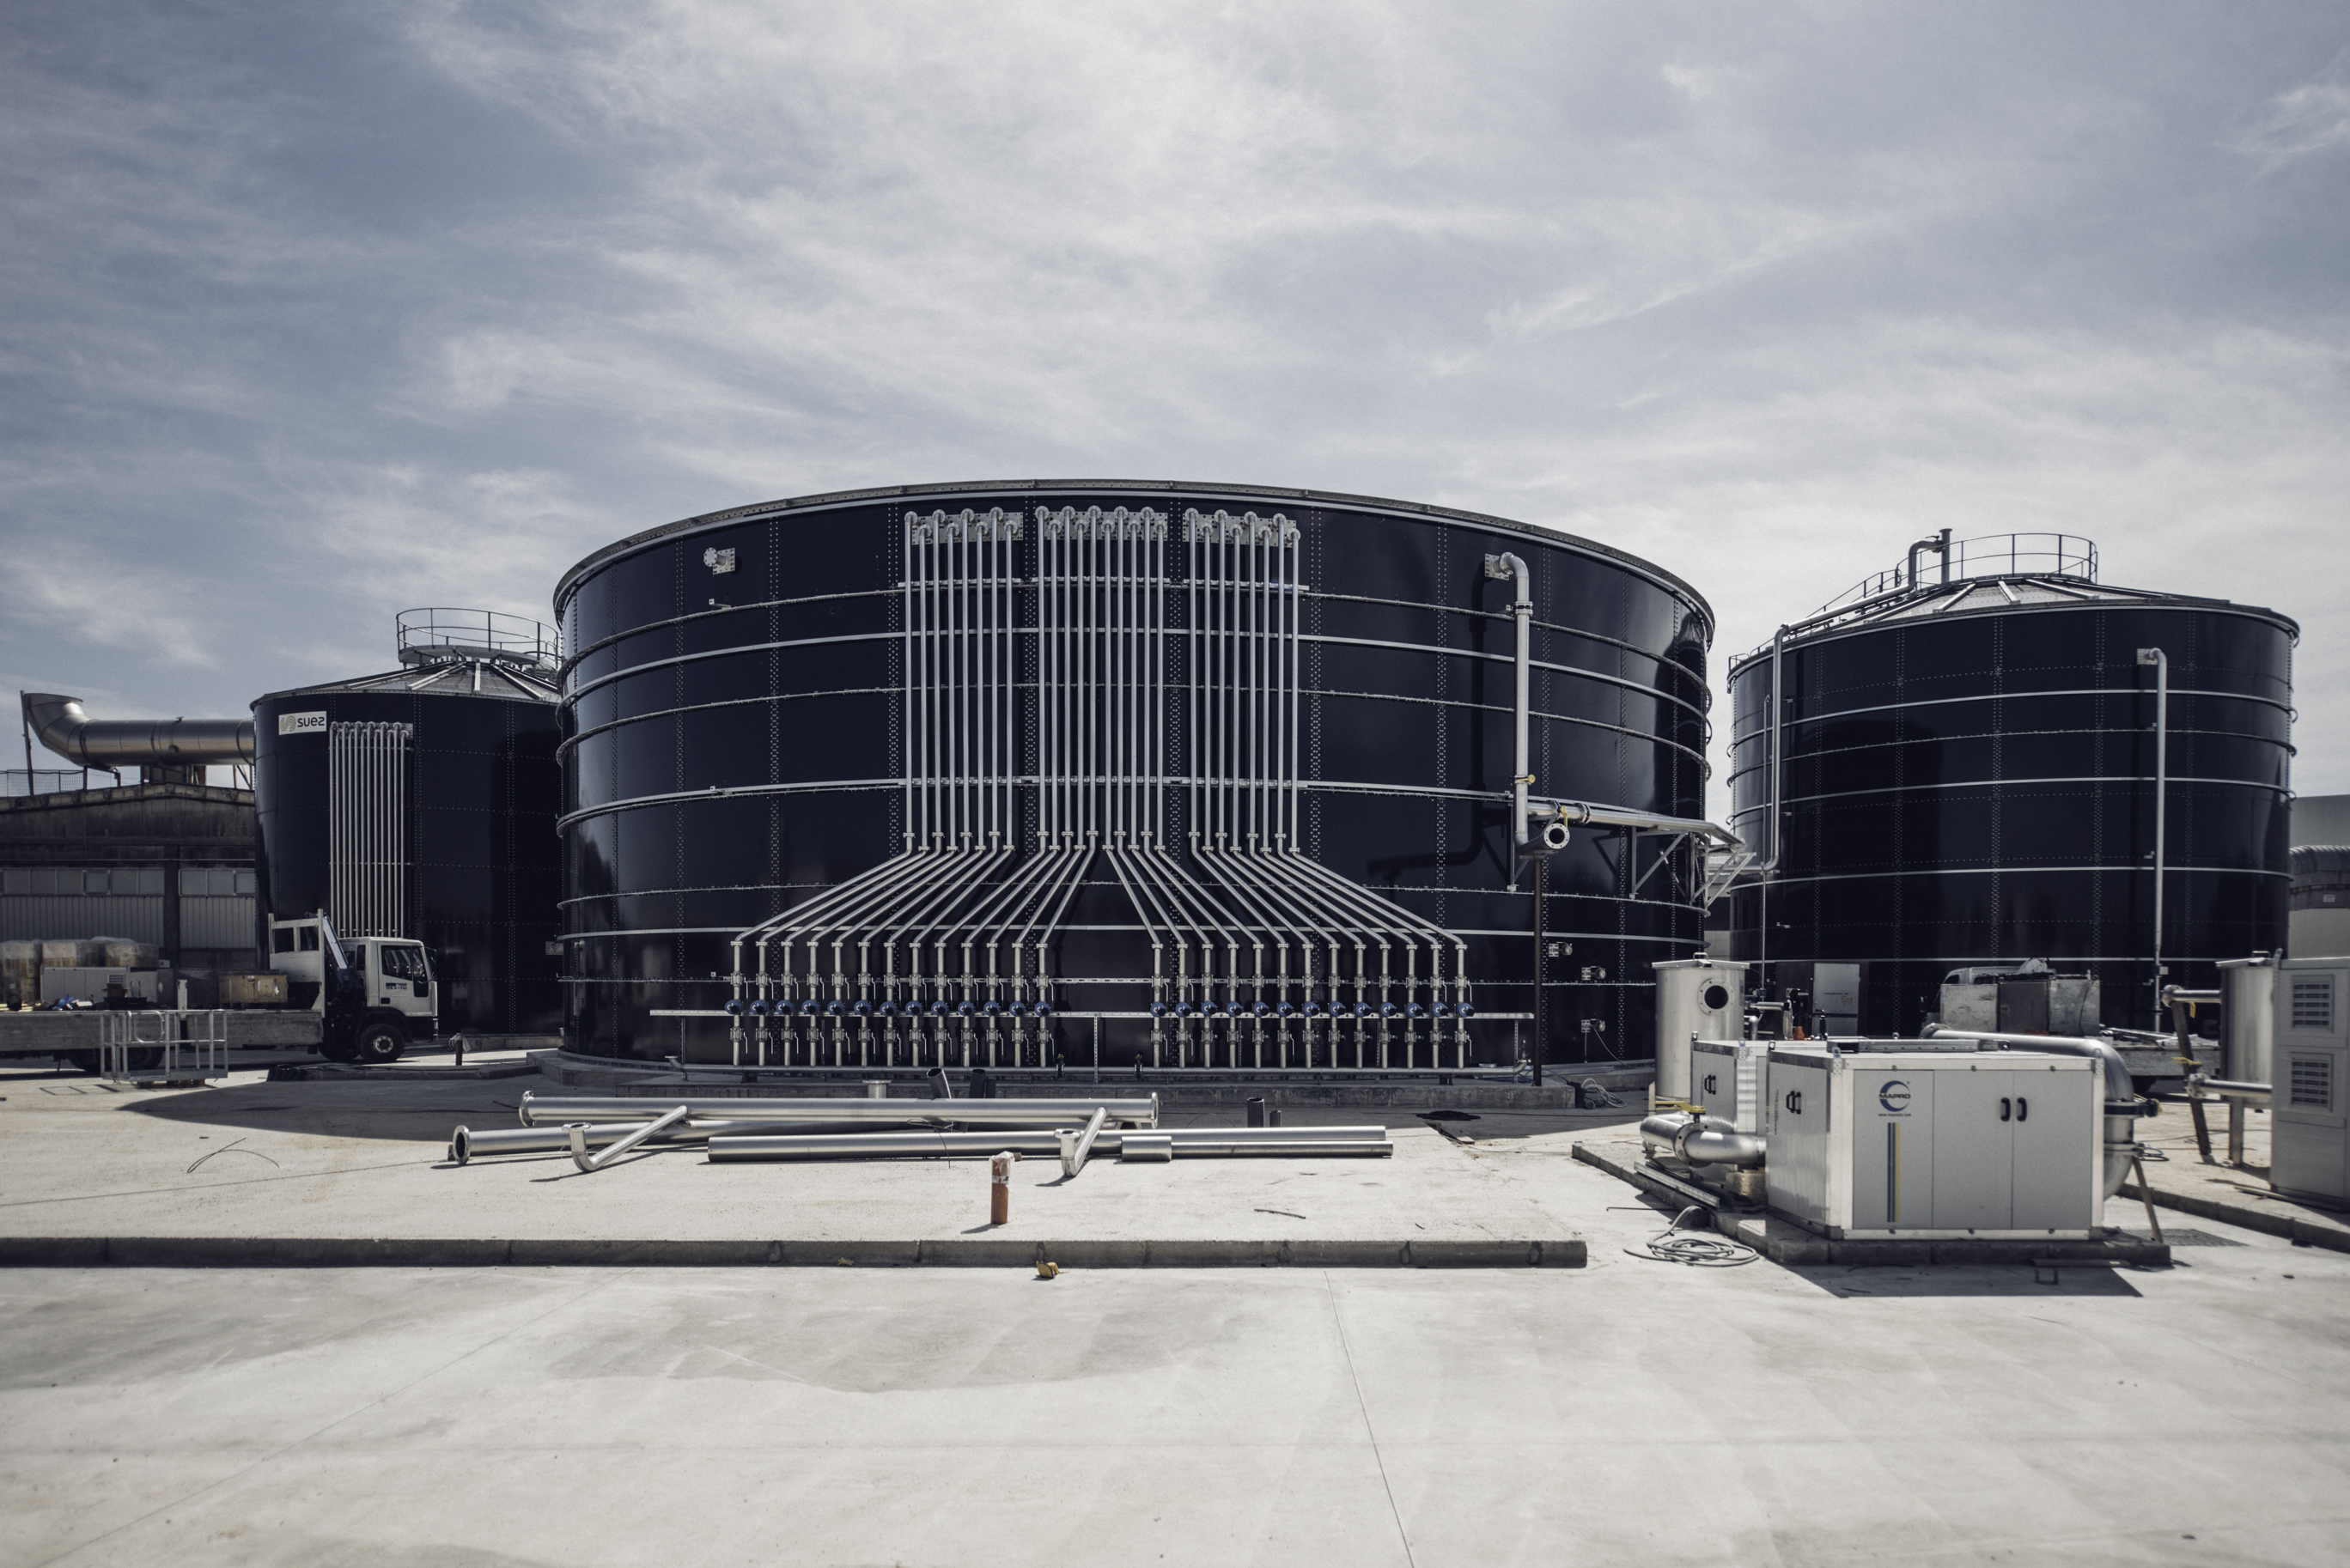 Galleria Inaugurato a Modugno il primo impianto in Puglia che produce biogas dai rifiuti. Emiliano: “Con questo impianto trasformiamo una minaccia in energia” - Diapositiva 8 di 15